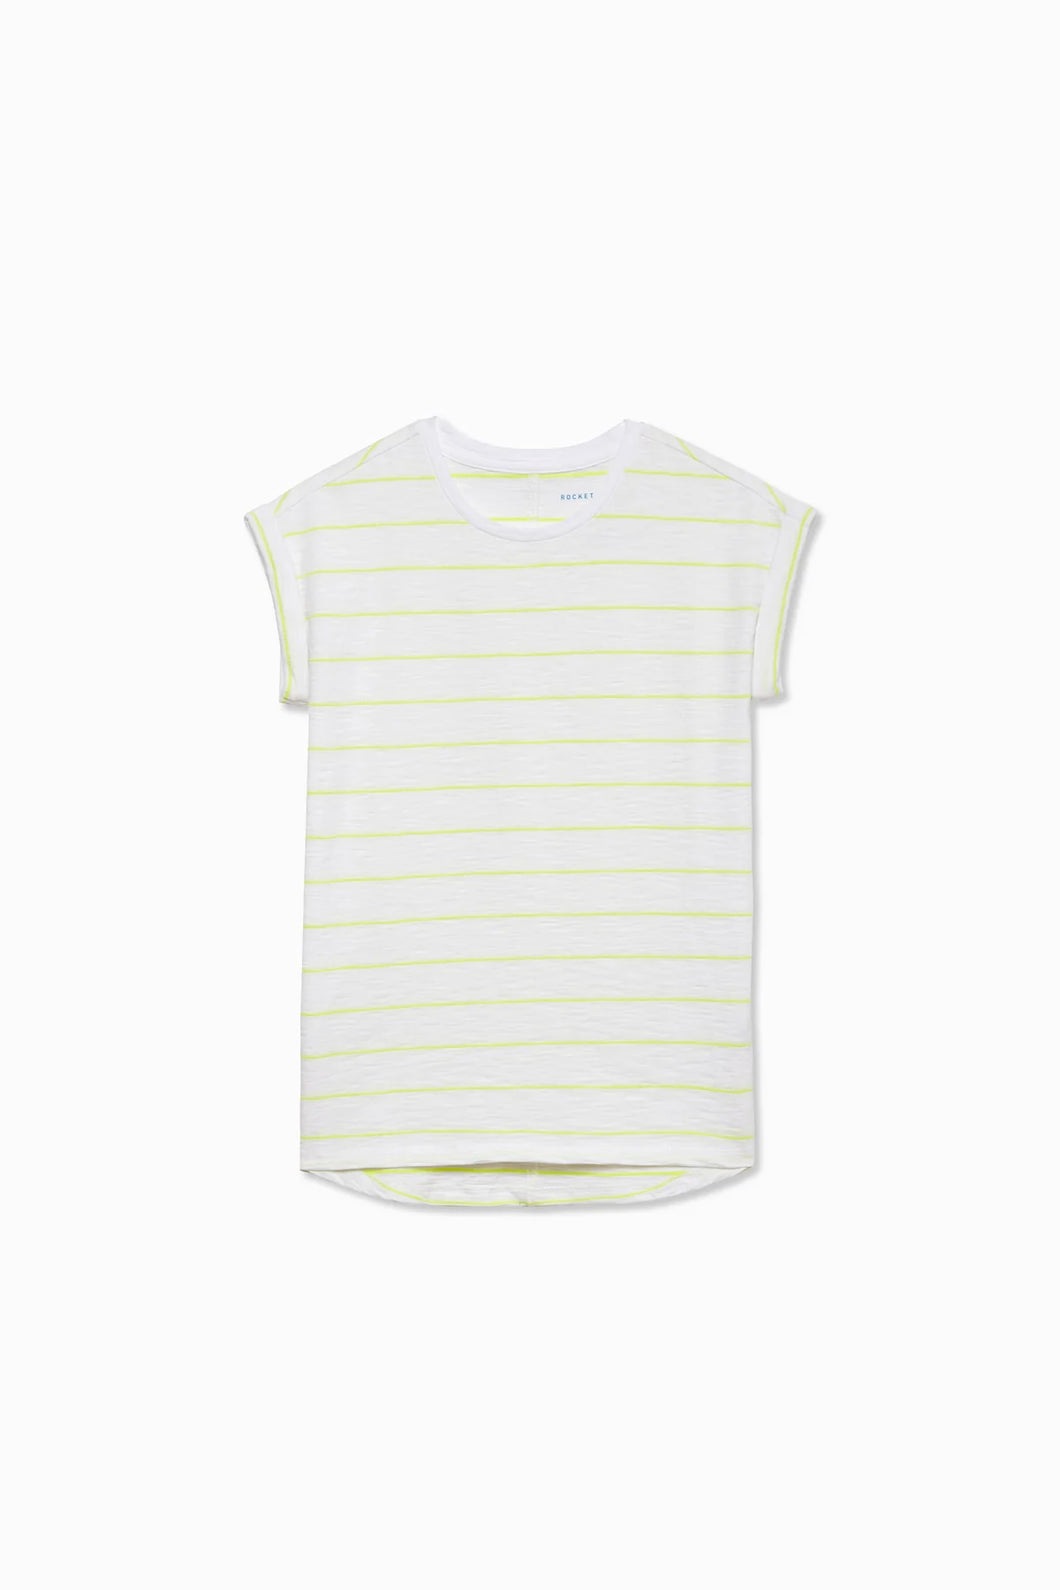 RoA Neon Yellow Striped T-Shirt